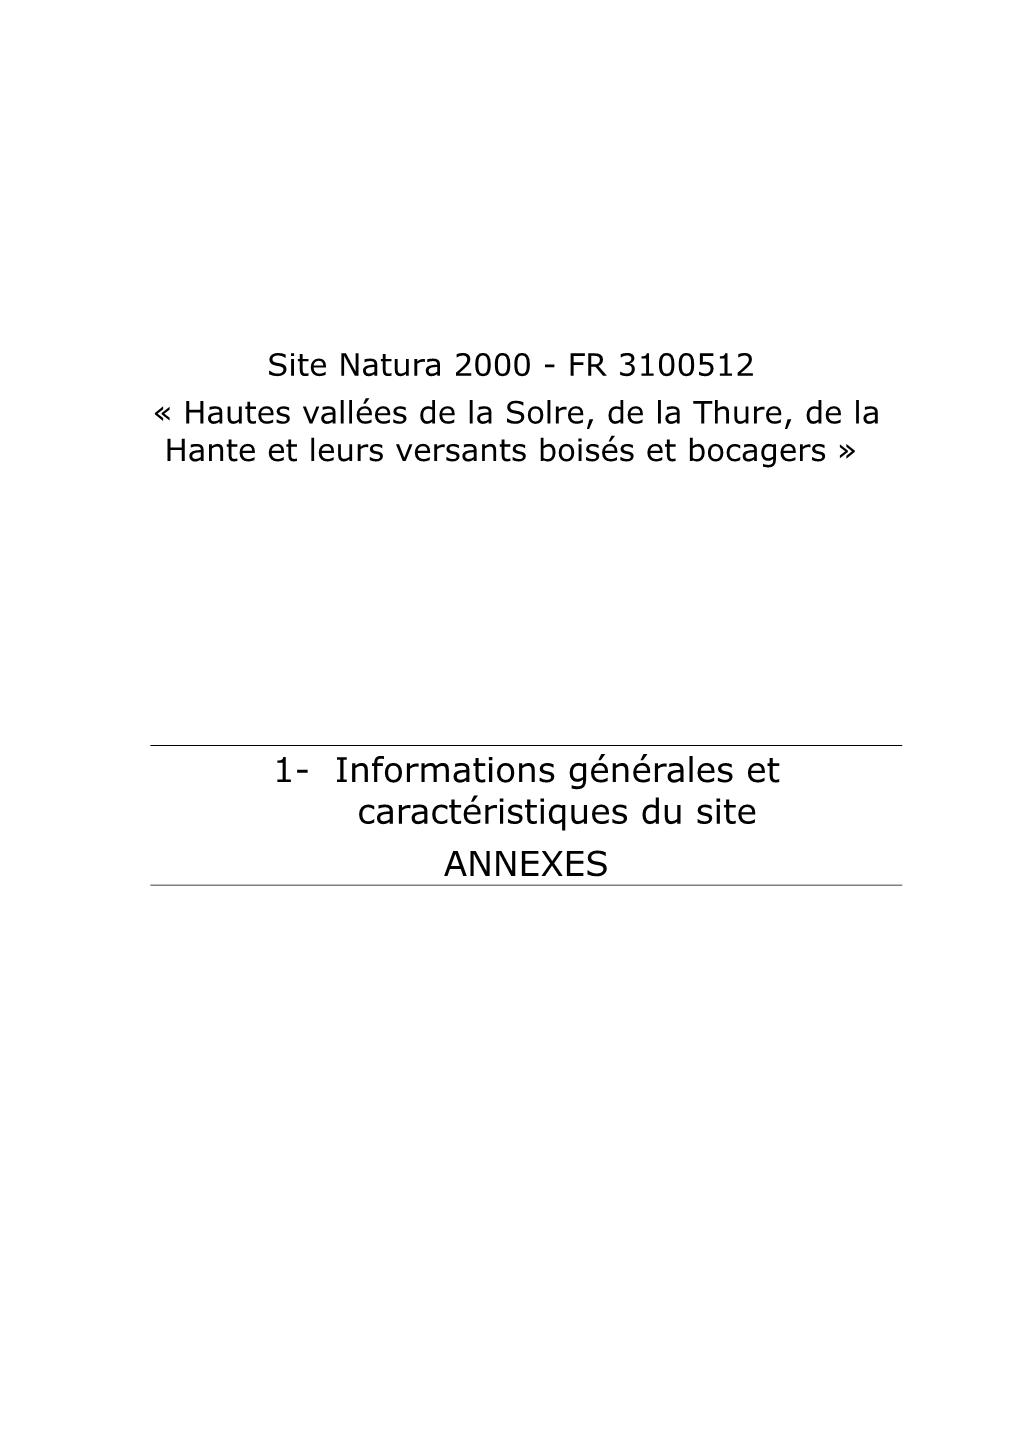 1- Informations Générales Et Caractéristiques Du Site ANNEXES